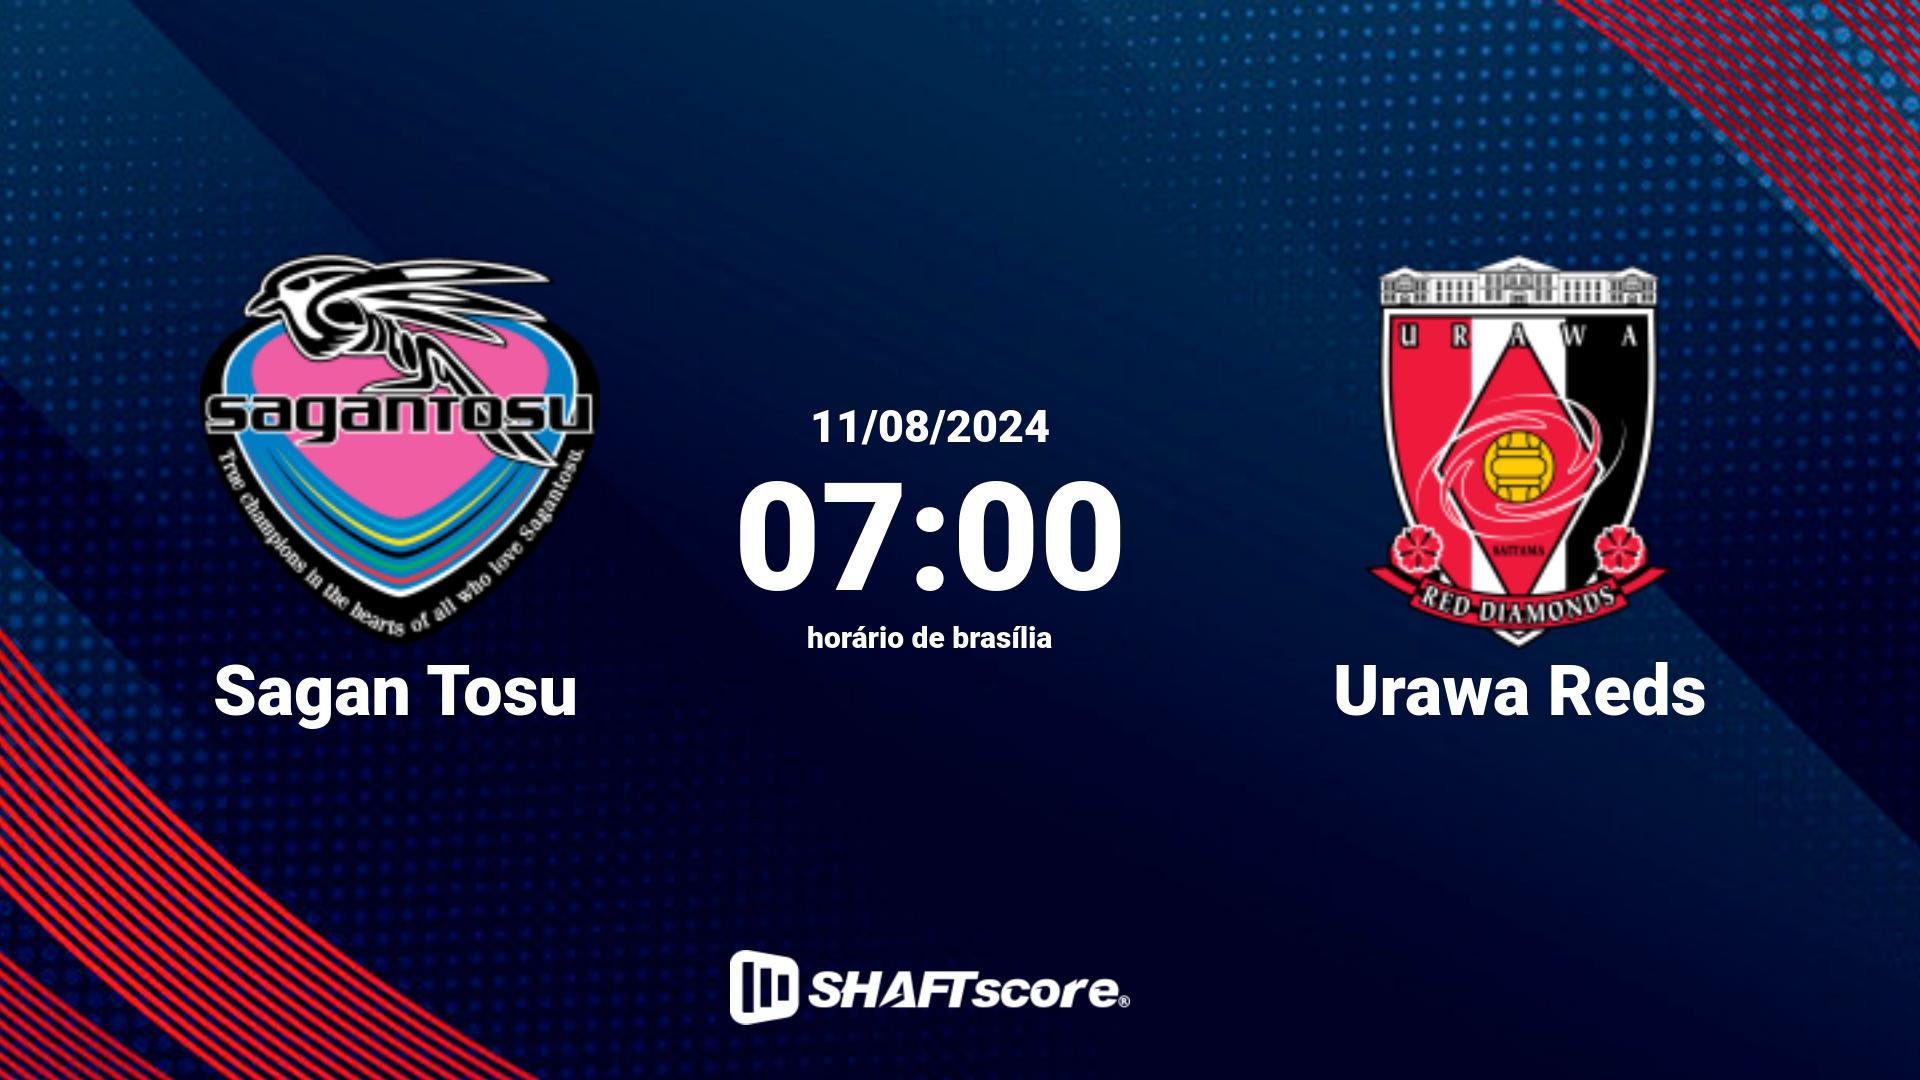 Estatísticas do jogo Sagan Tosu vs Urawa Reds 11.08 07:00